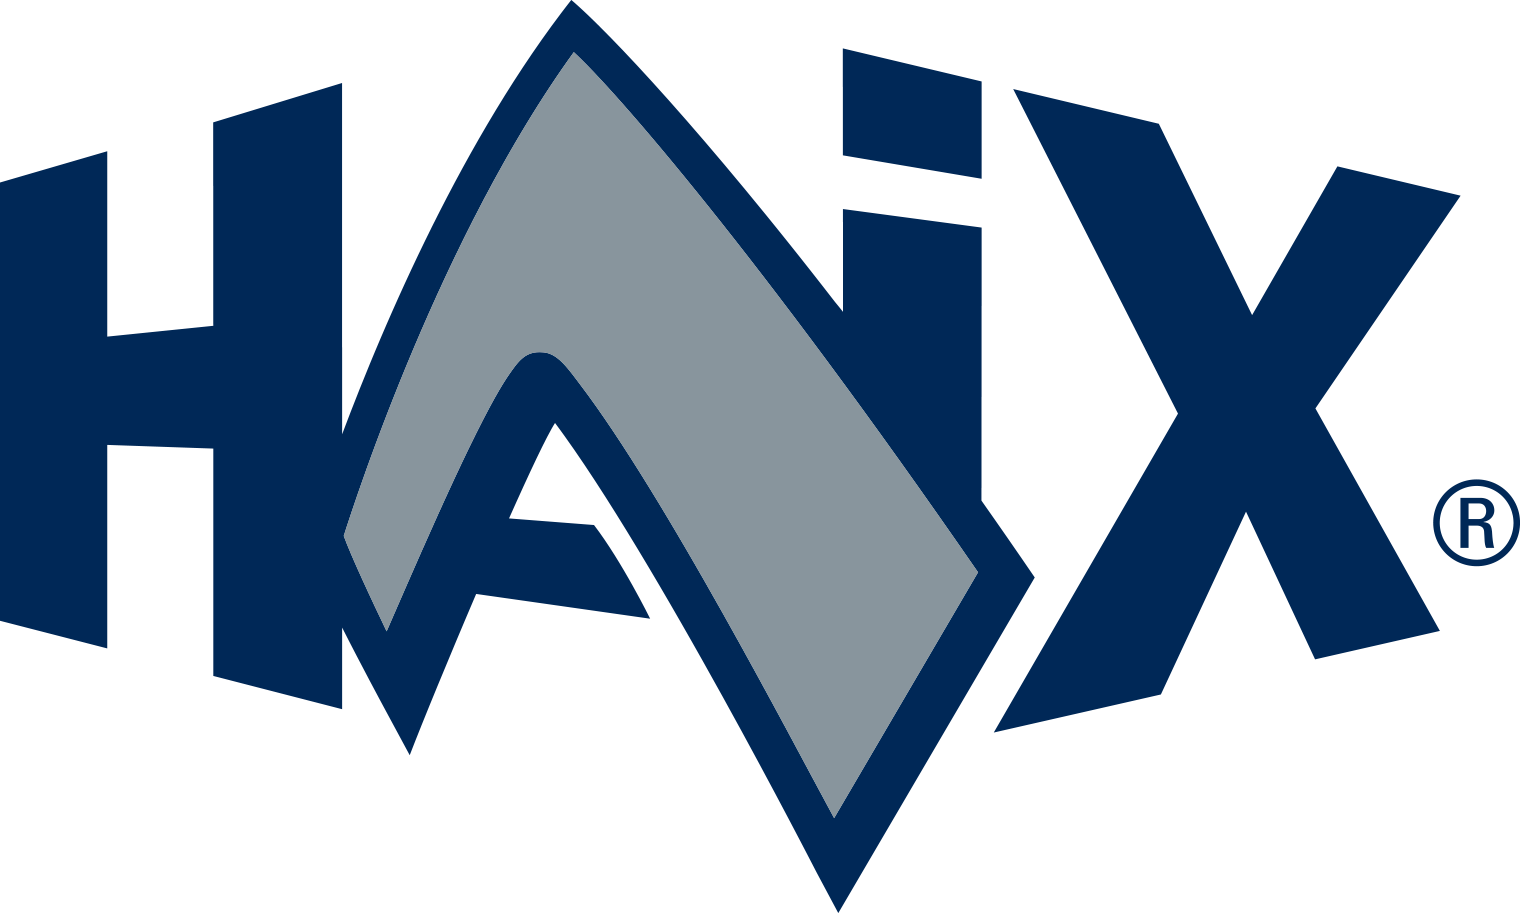 HAIX Logo